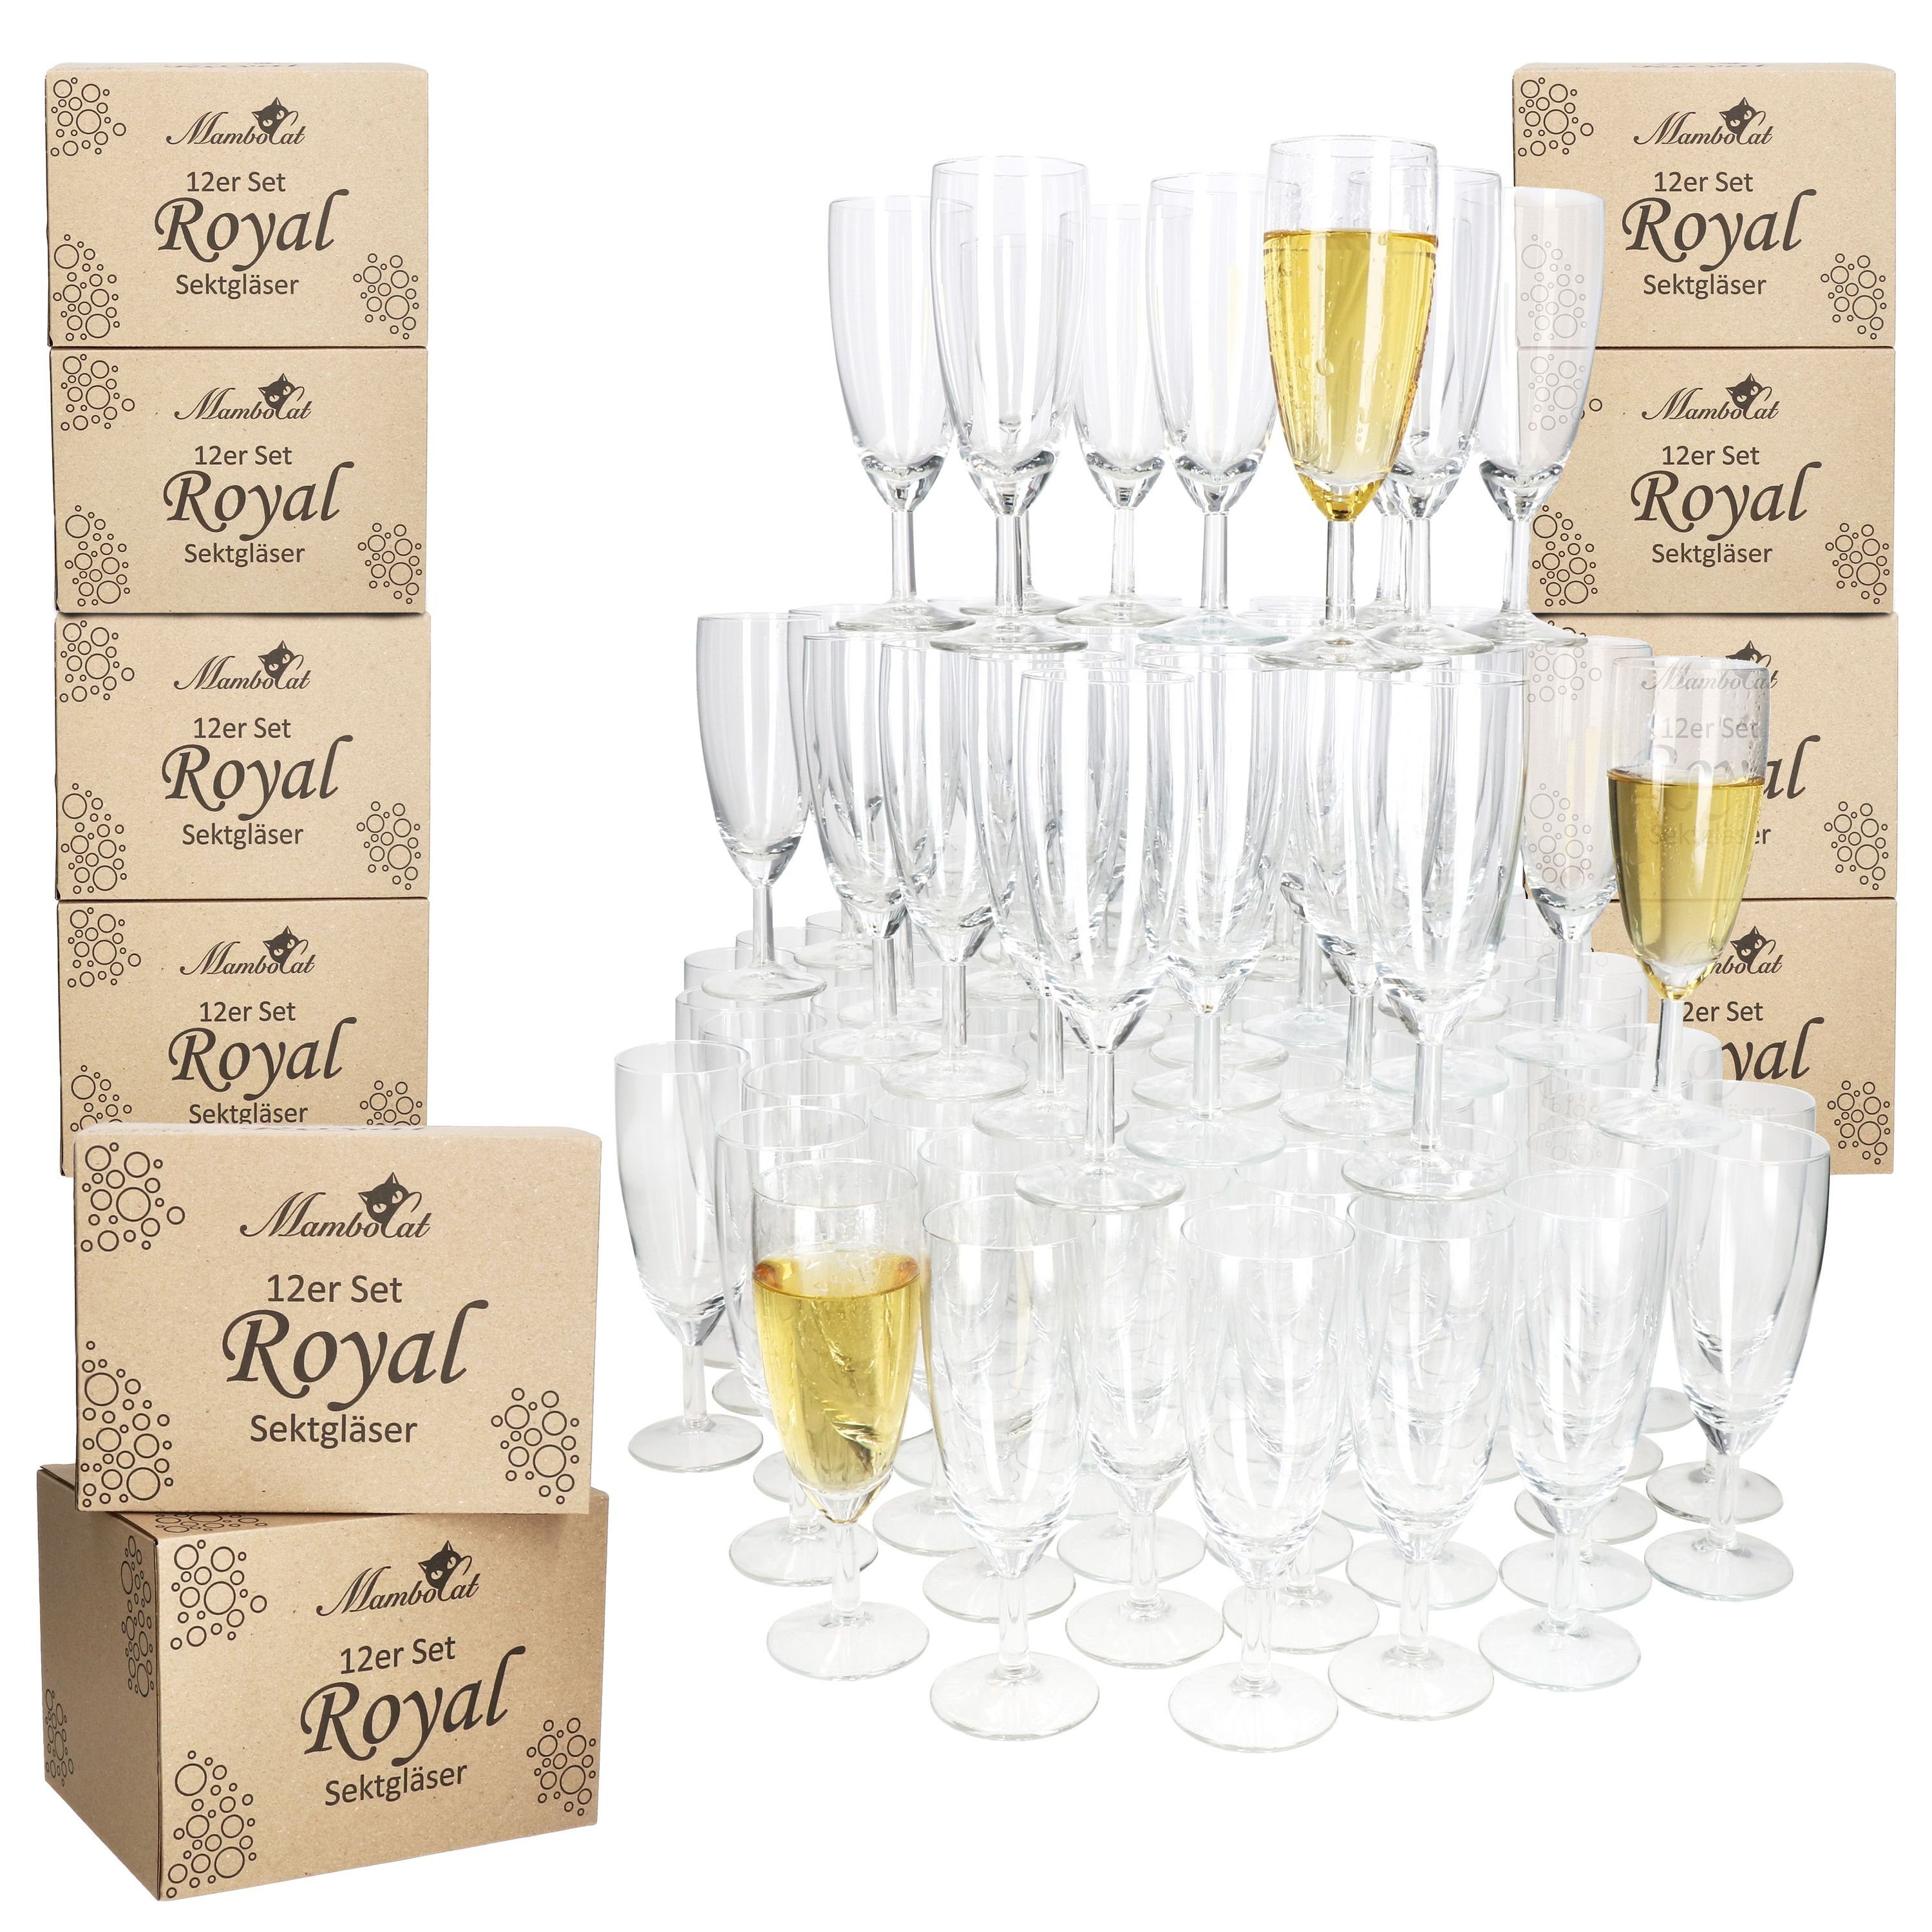 MamboCat Sektglas 120er Set Royal Sektgläser 140ml Champagner-Glas klare Prosecco Party, Glas